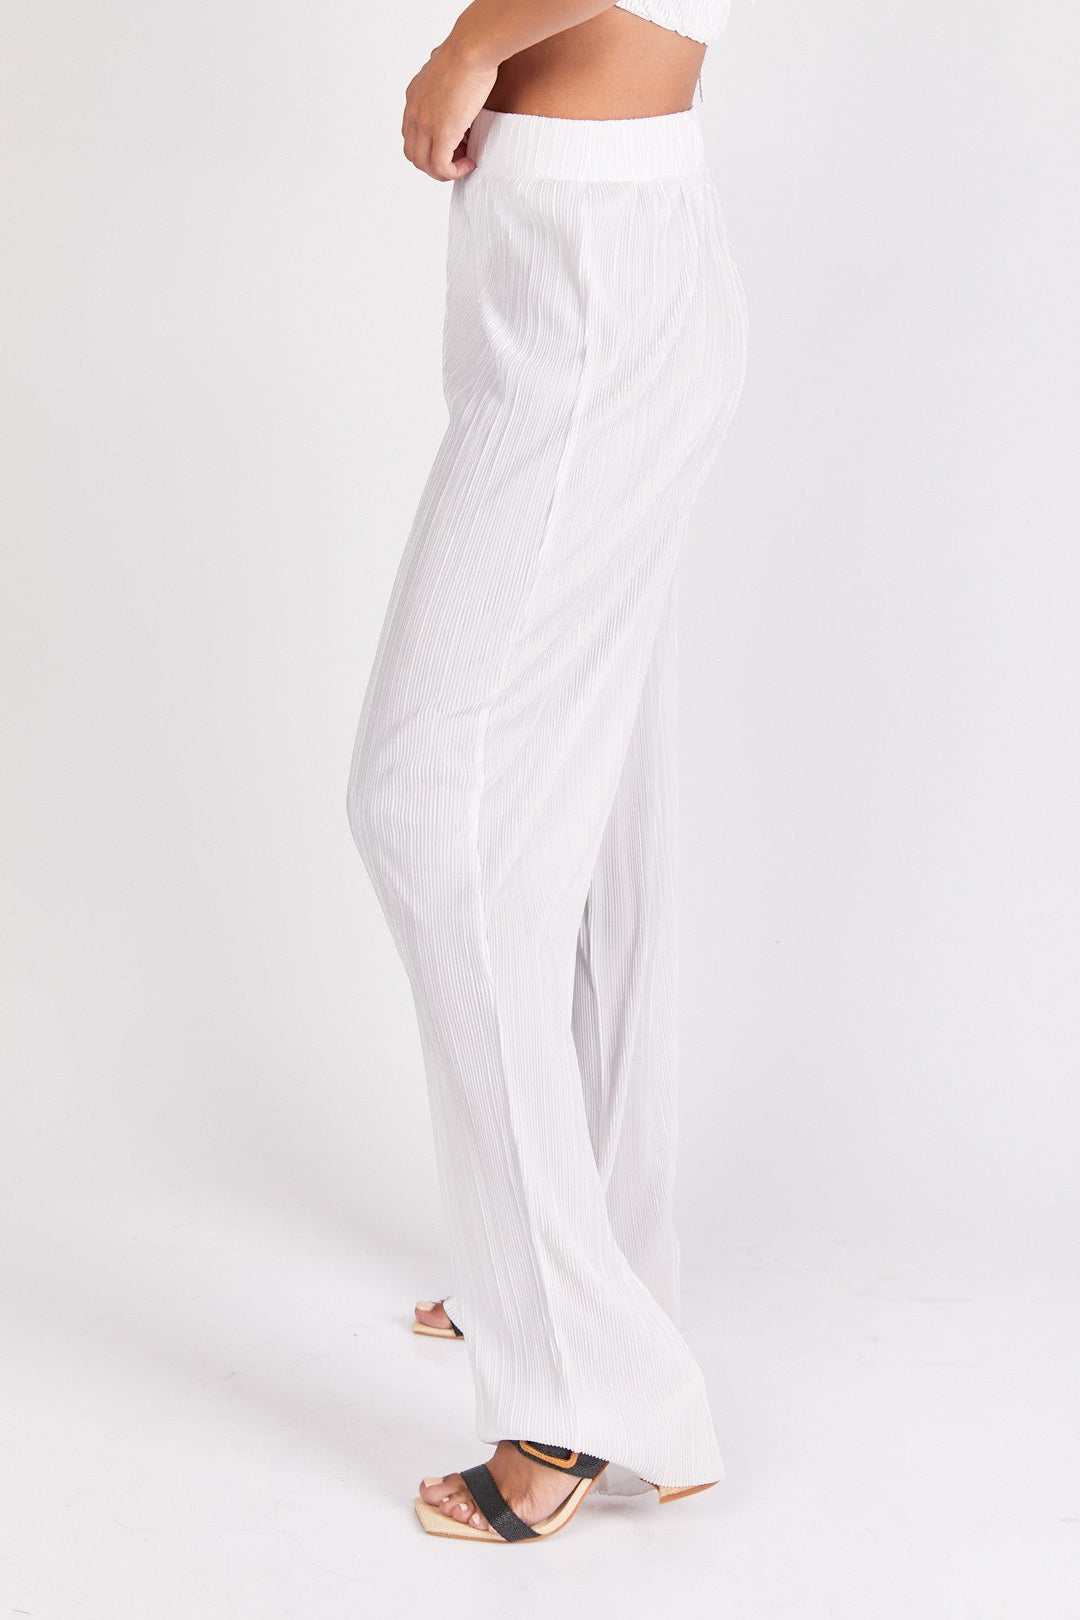 מכנסי קואצ'לה בצבע לבן לורקס - Neta Efrati